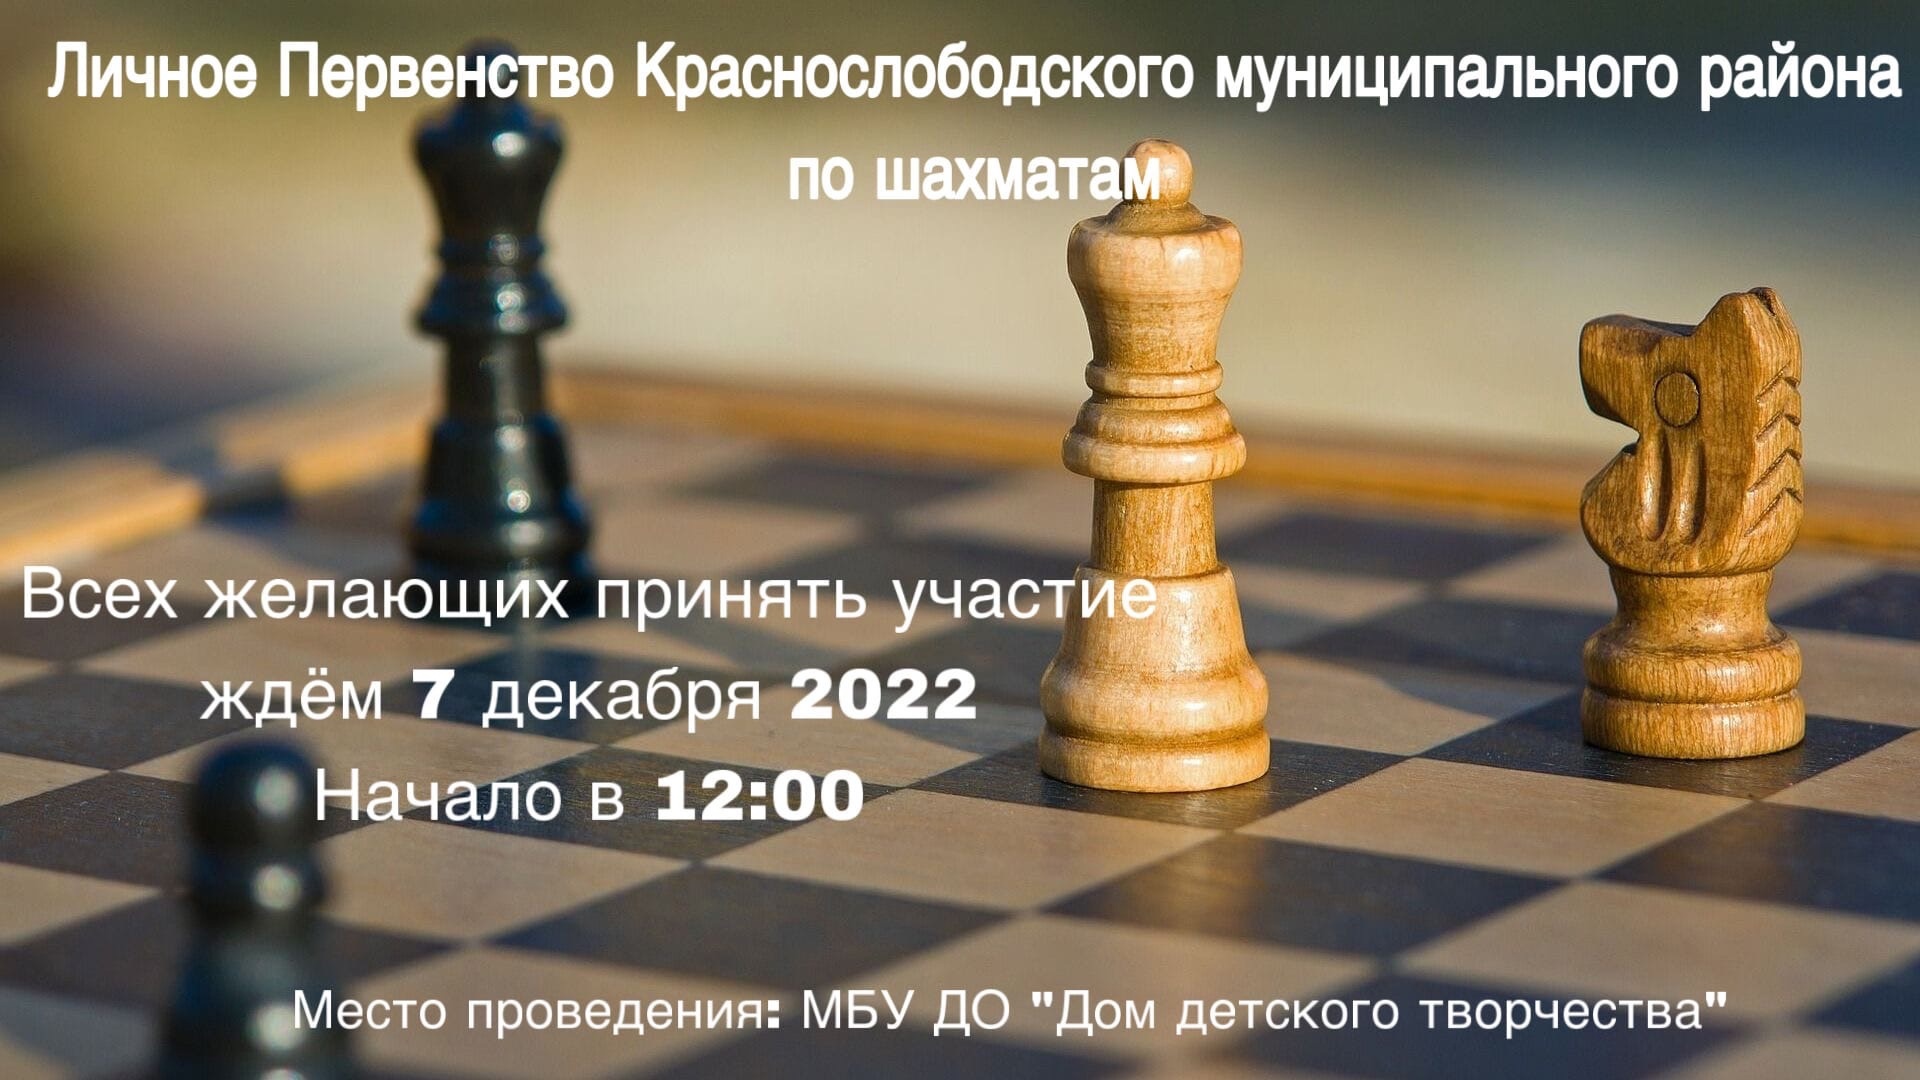 Личное Первенство Краснослободского муниципального района по шахматам.